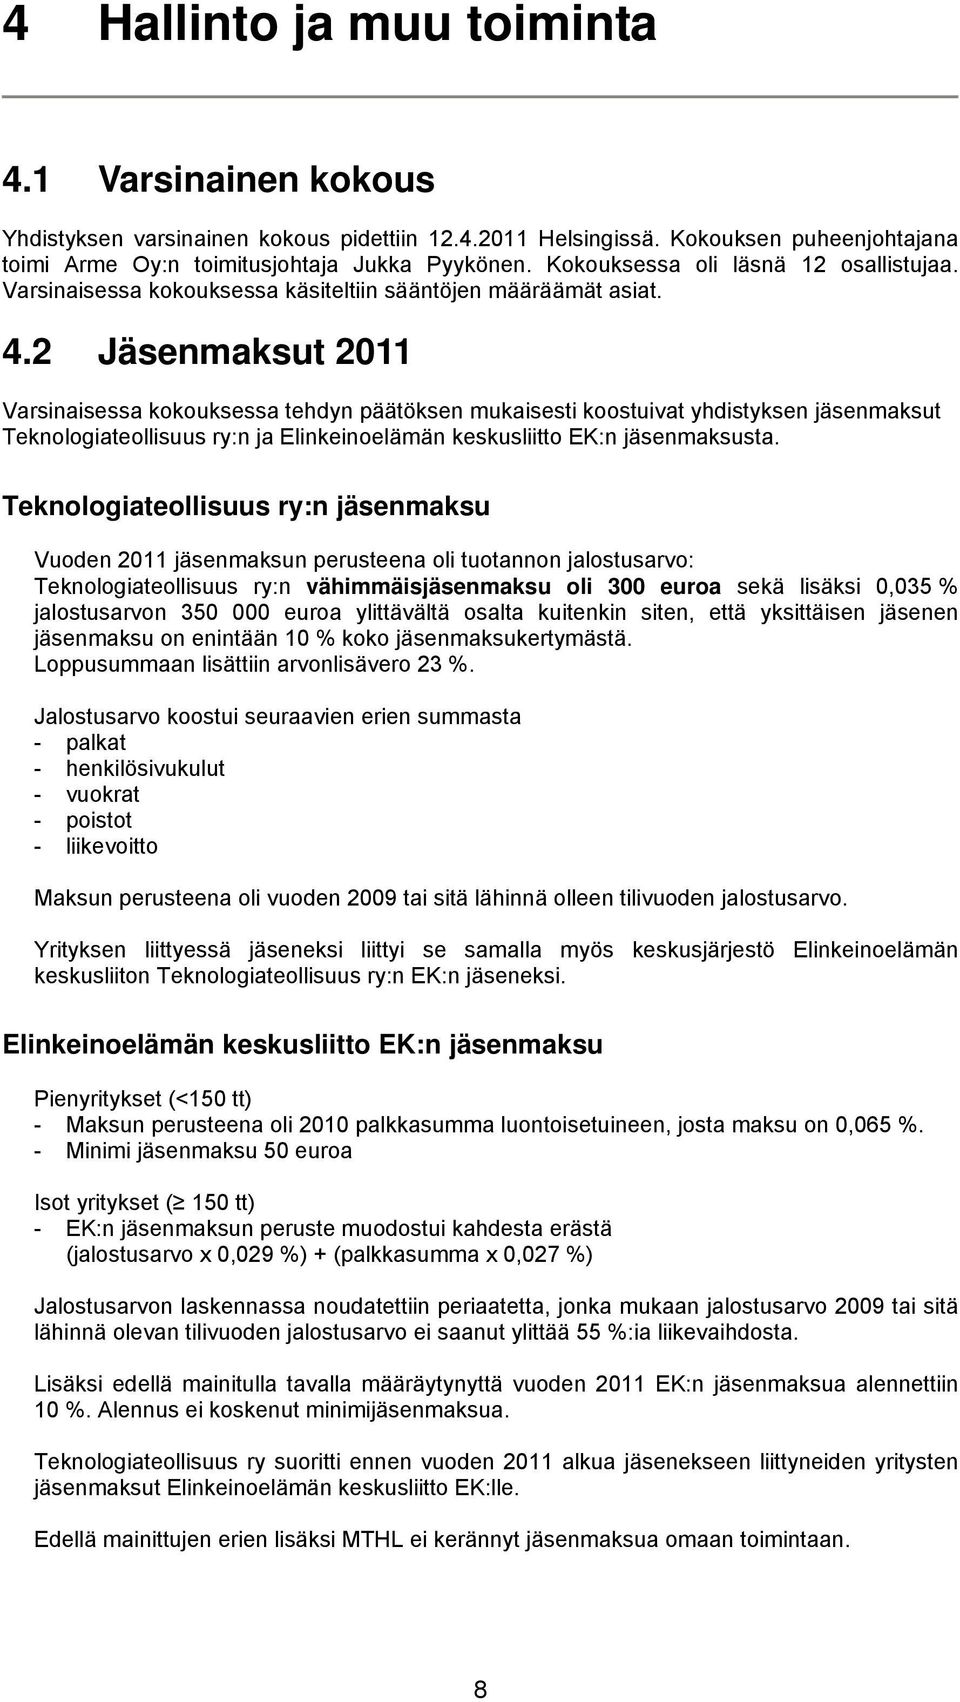 2 Jäsenmaksut 2011 Varsinaisessa kokouksessa tehdyn päätöksen mukaisesti koostuivat yhdistyksen jäsenmaksut Teknologiateollisuus ry:n ja Elinkeinoelämän keskusliitto EK:n jäsenmaksusta.